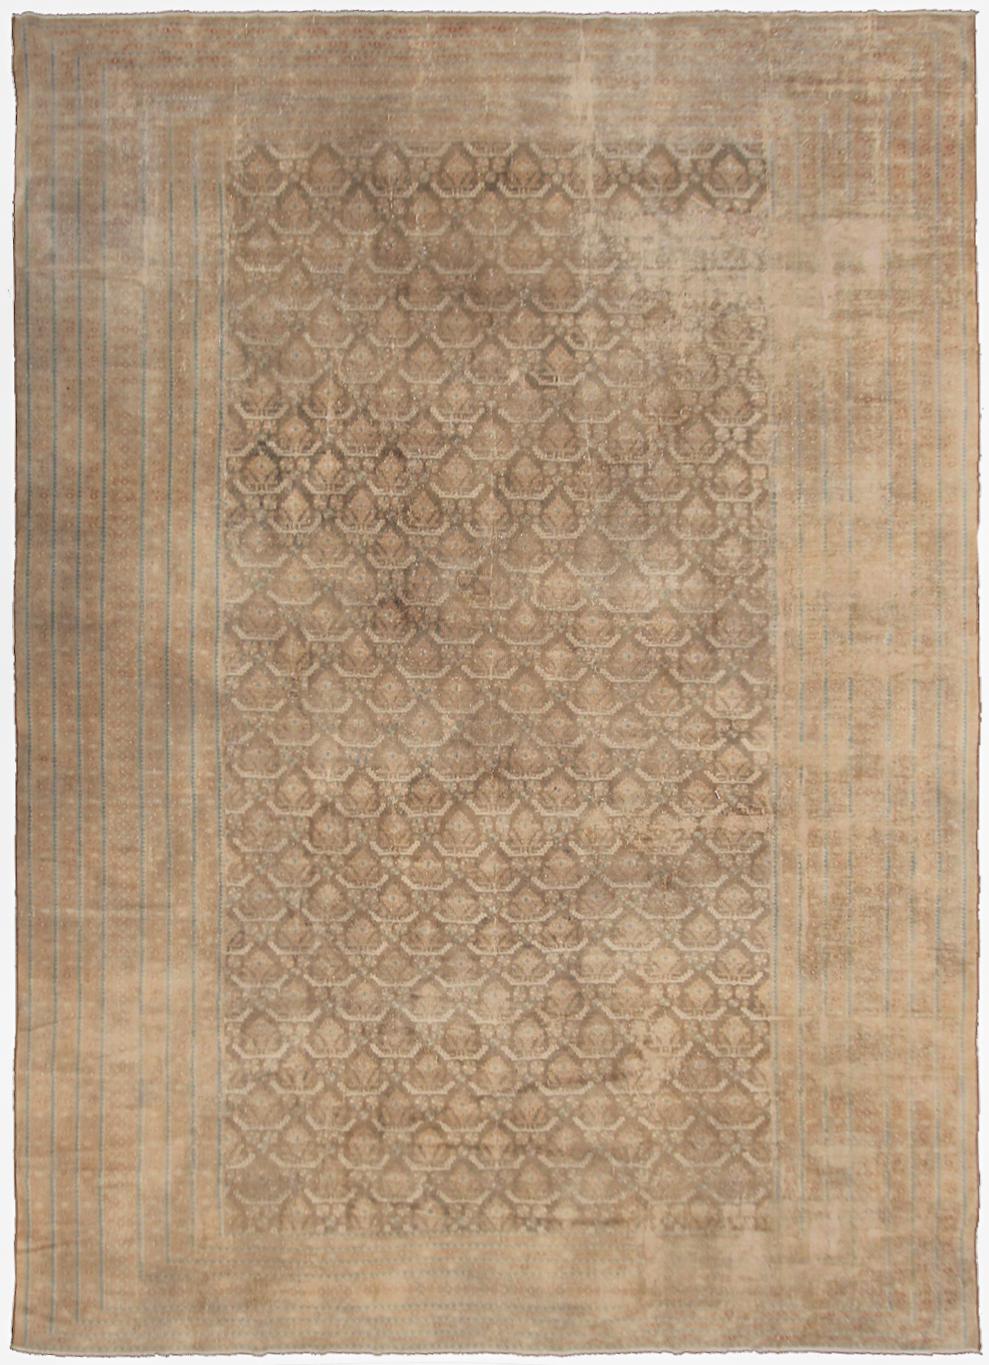 Rare tapis persan ancien de type malayer, beige, géométrique, ton sur ton, exceptionnel, 9x12 1920




